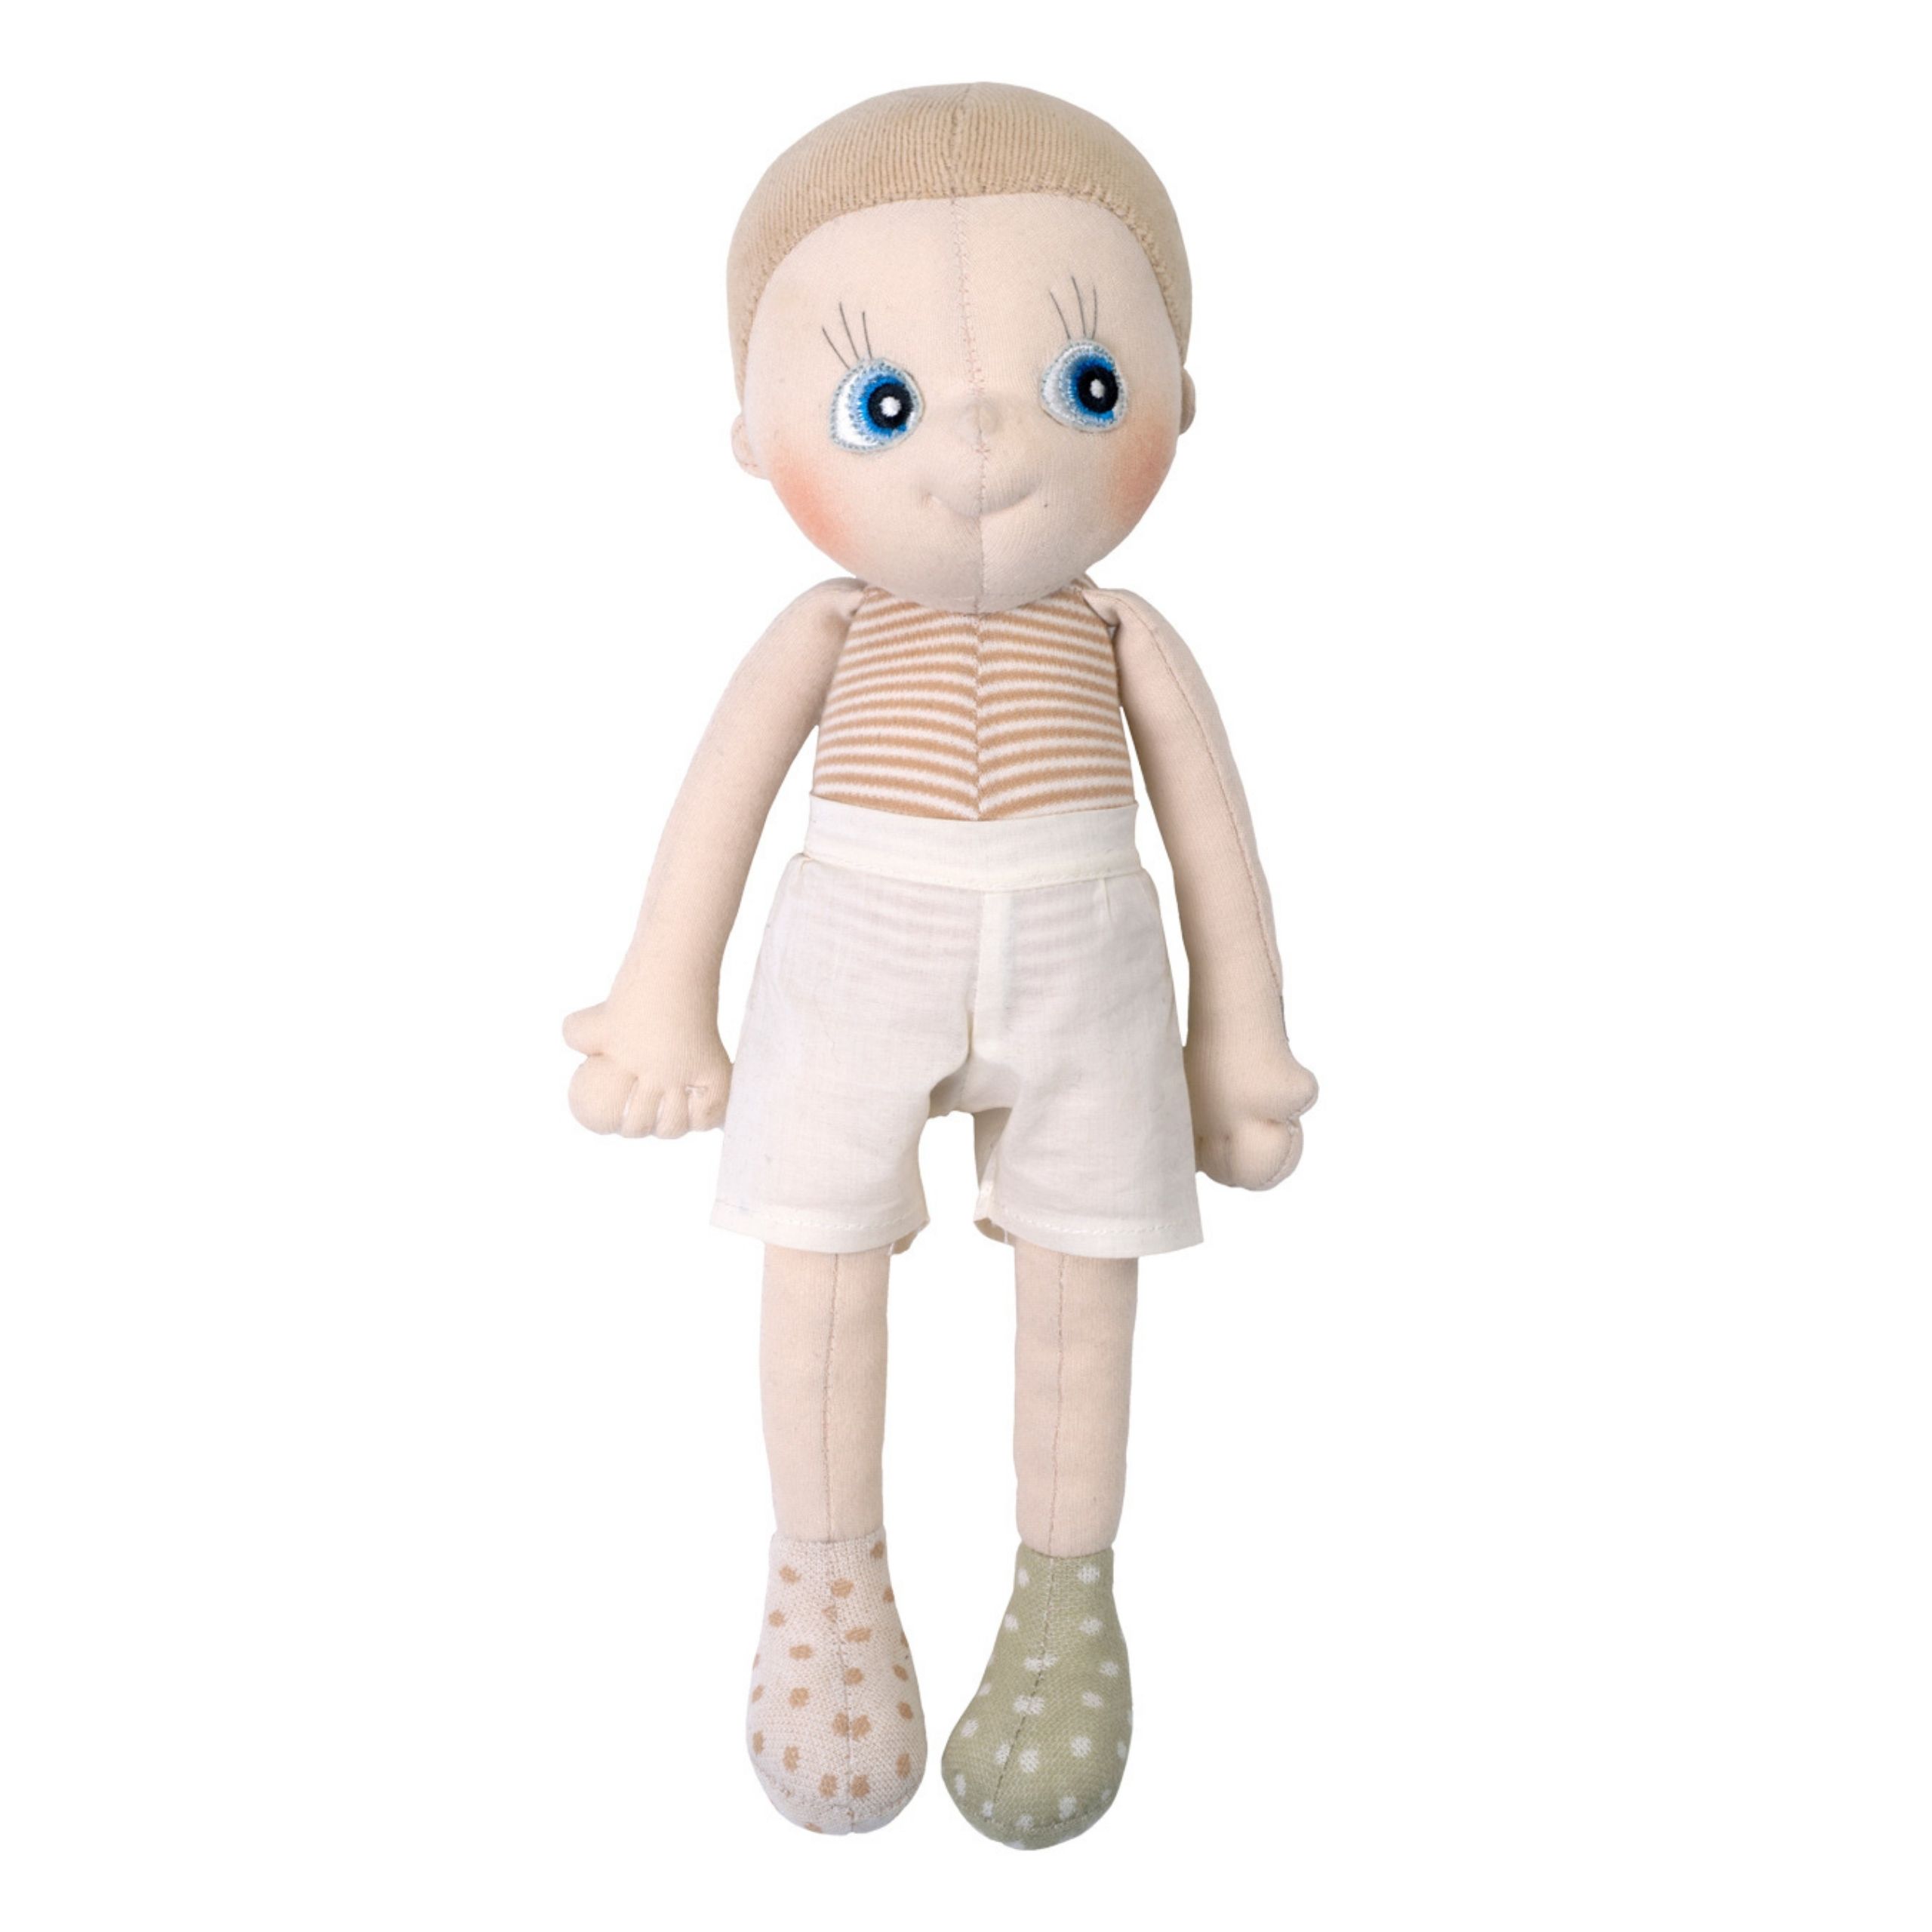 Baby toys rubens barn soft doll aspen ecobuds